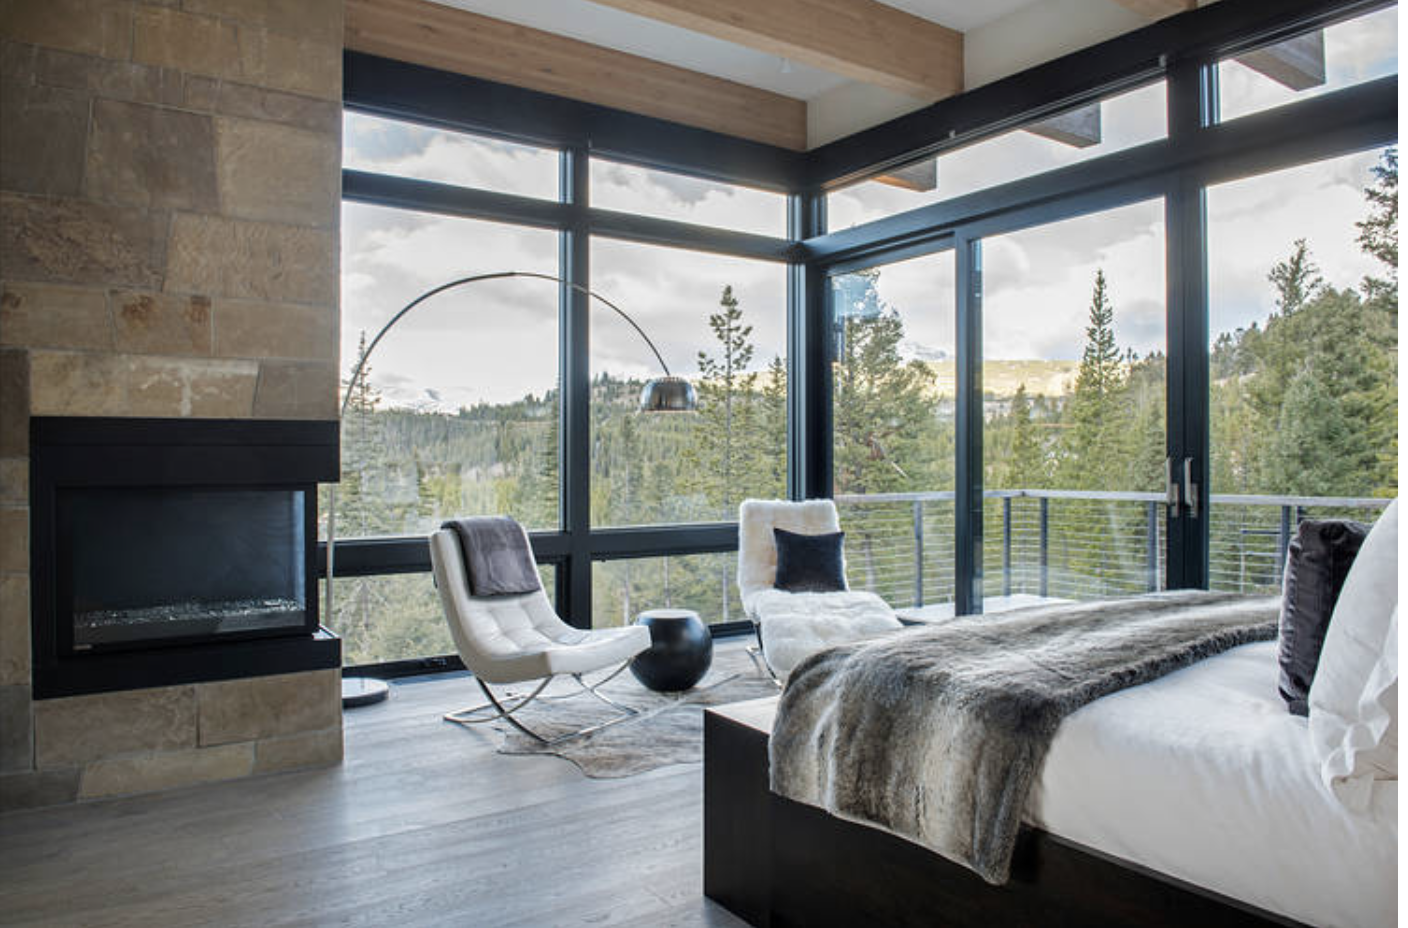 Окно в спальне — как его красиво оформить и простые способы декора на 142 фото!